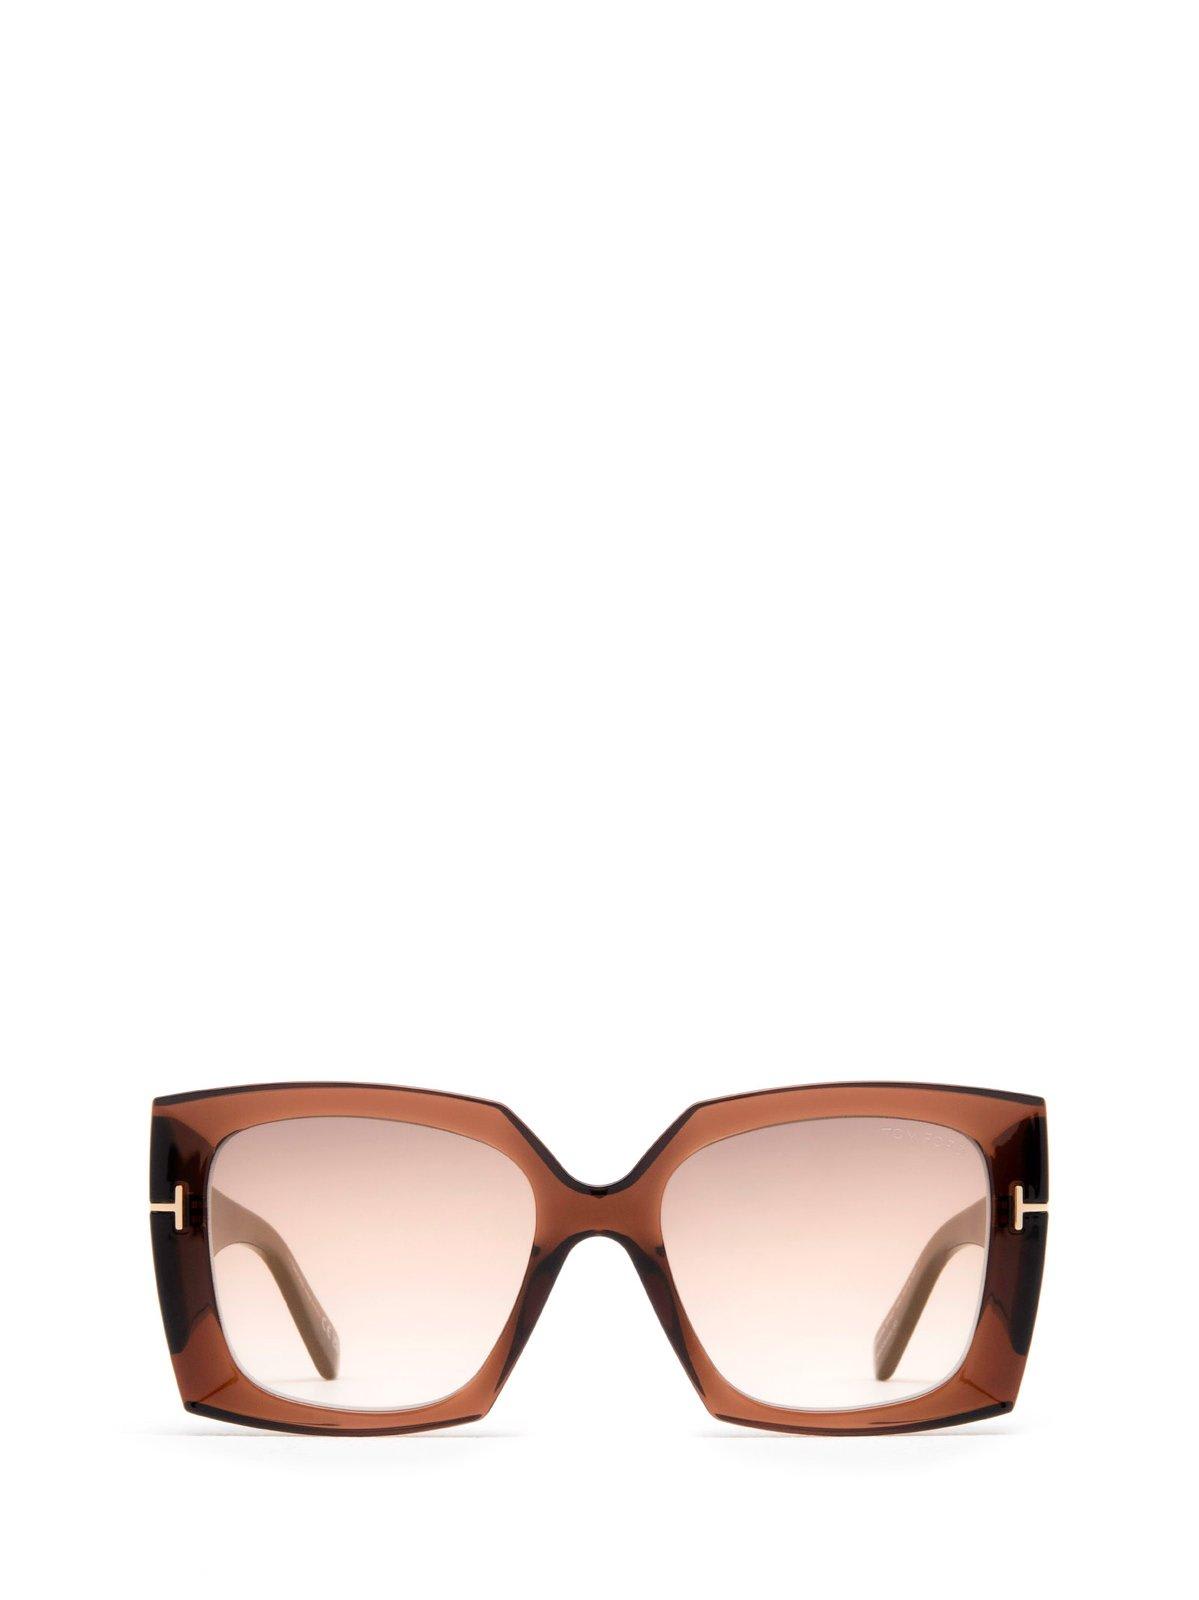 Tom Ford Jacquetta Sunglasses Sunglasses In 48g Marrone Scuro Luc / Marrone Specchiato